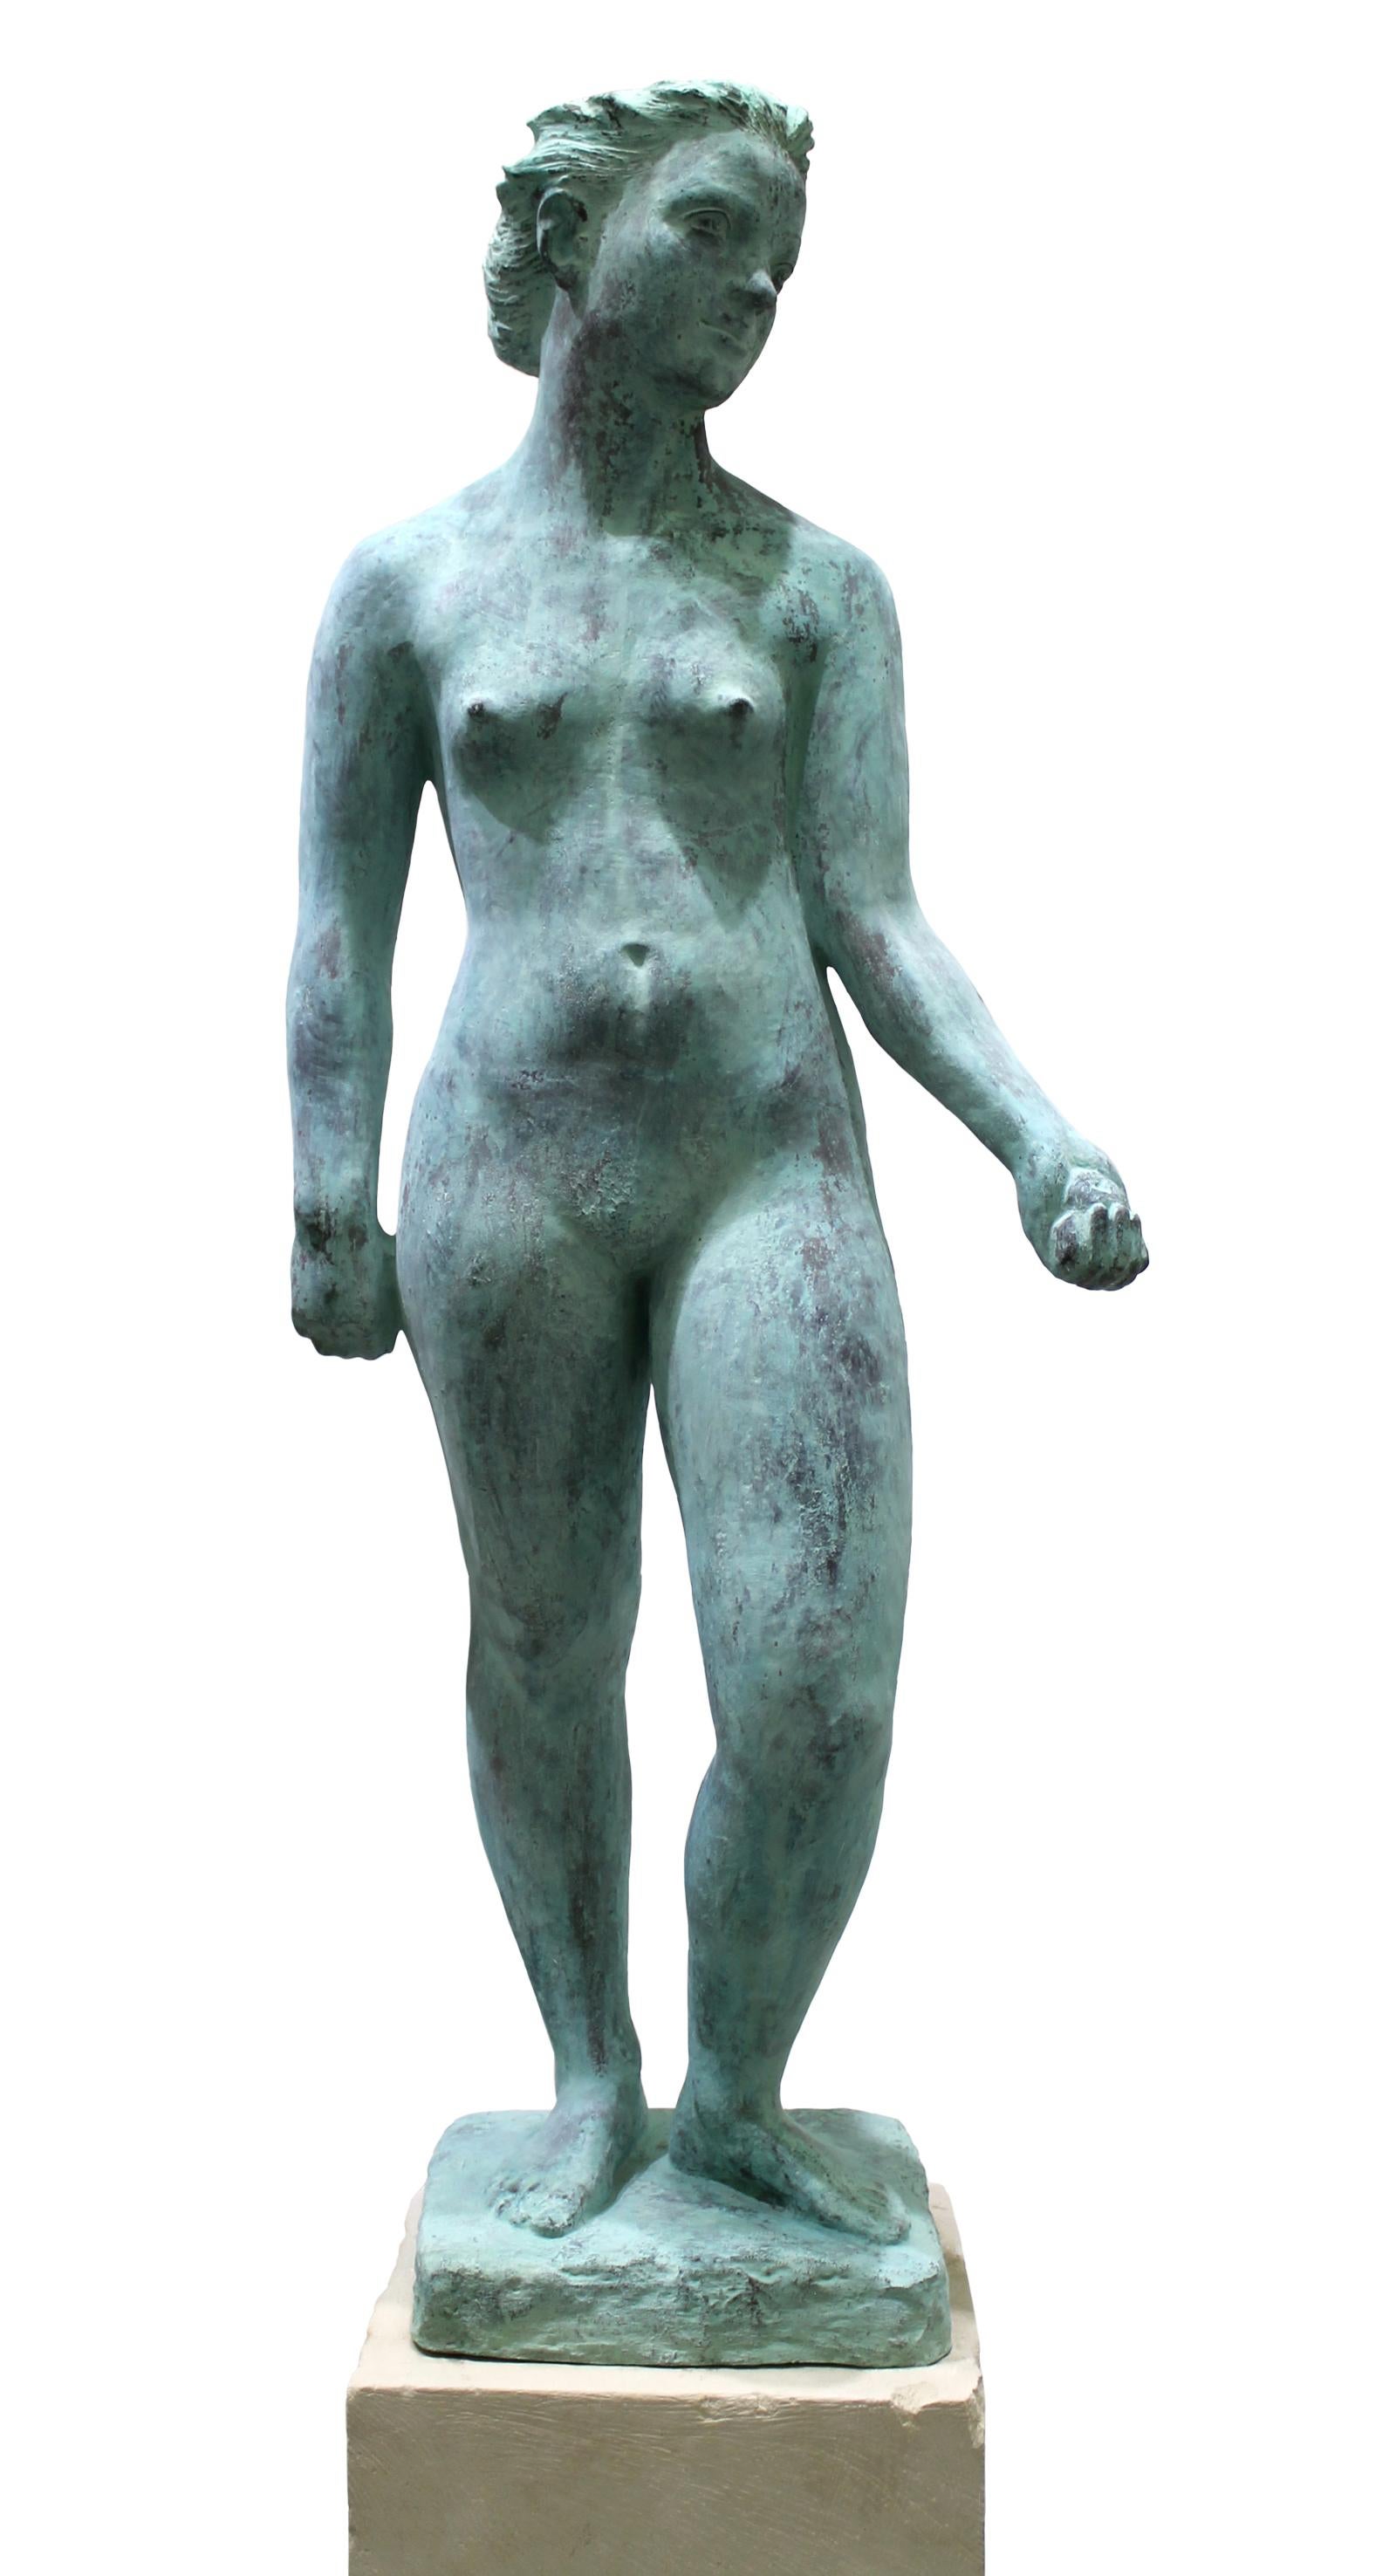 Eva – Figurative Skulptur Frau aus Bronze mit grüner Patina (Gold), Nude Sculpture, von Volodymyr Kochmar